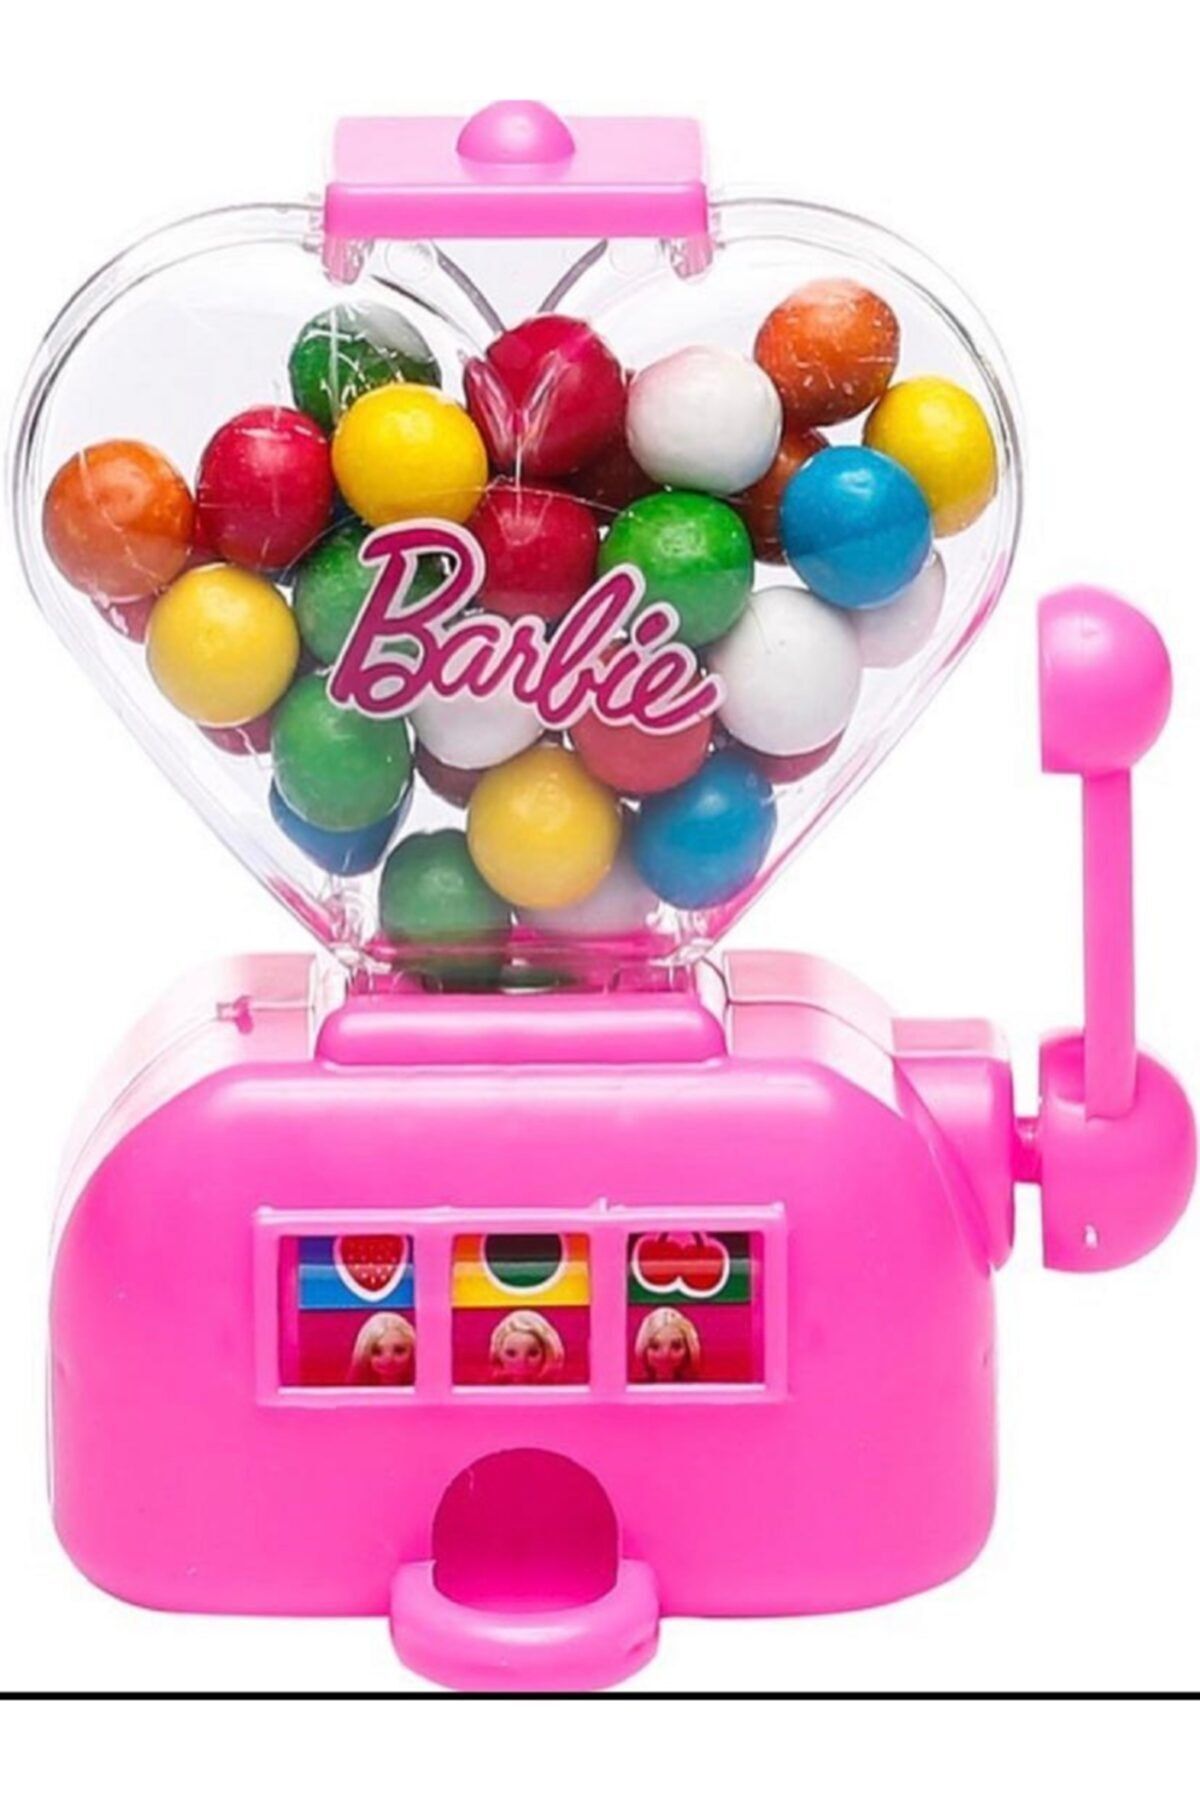 Barbie Gumball Machine